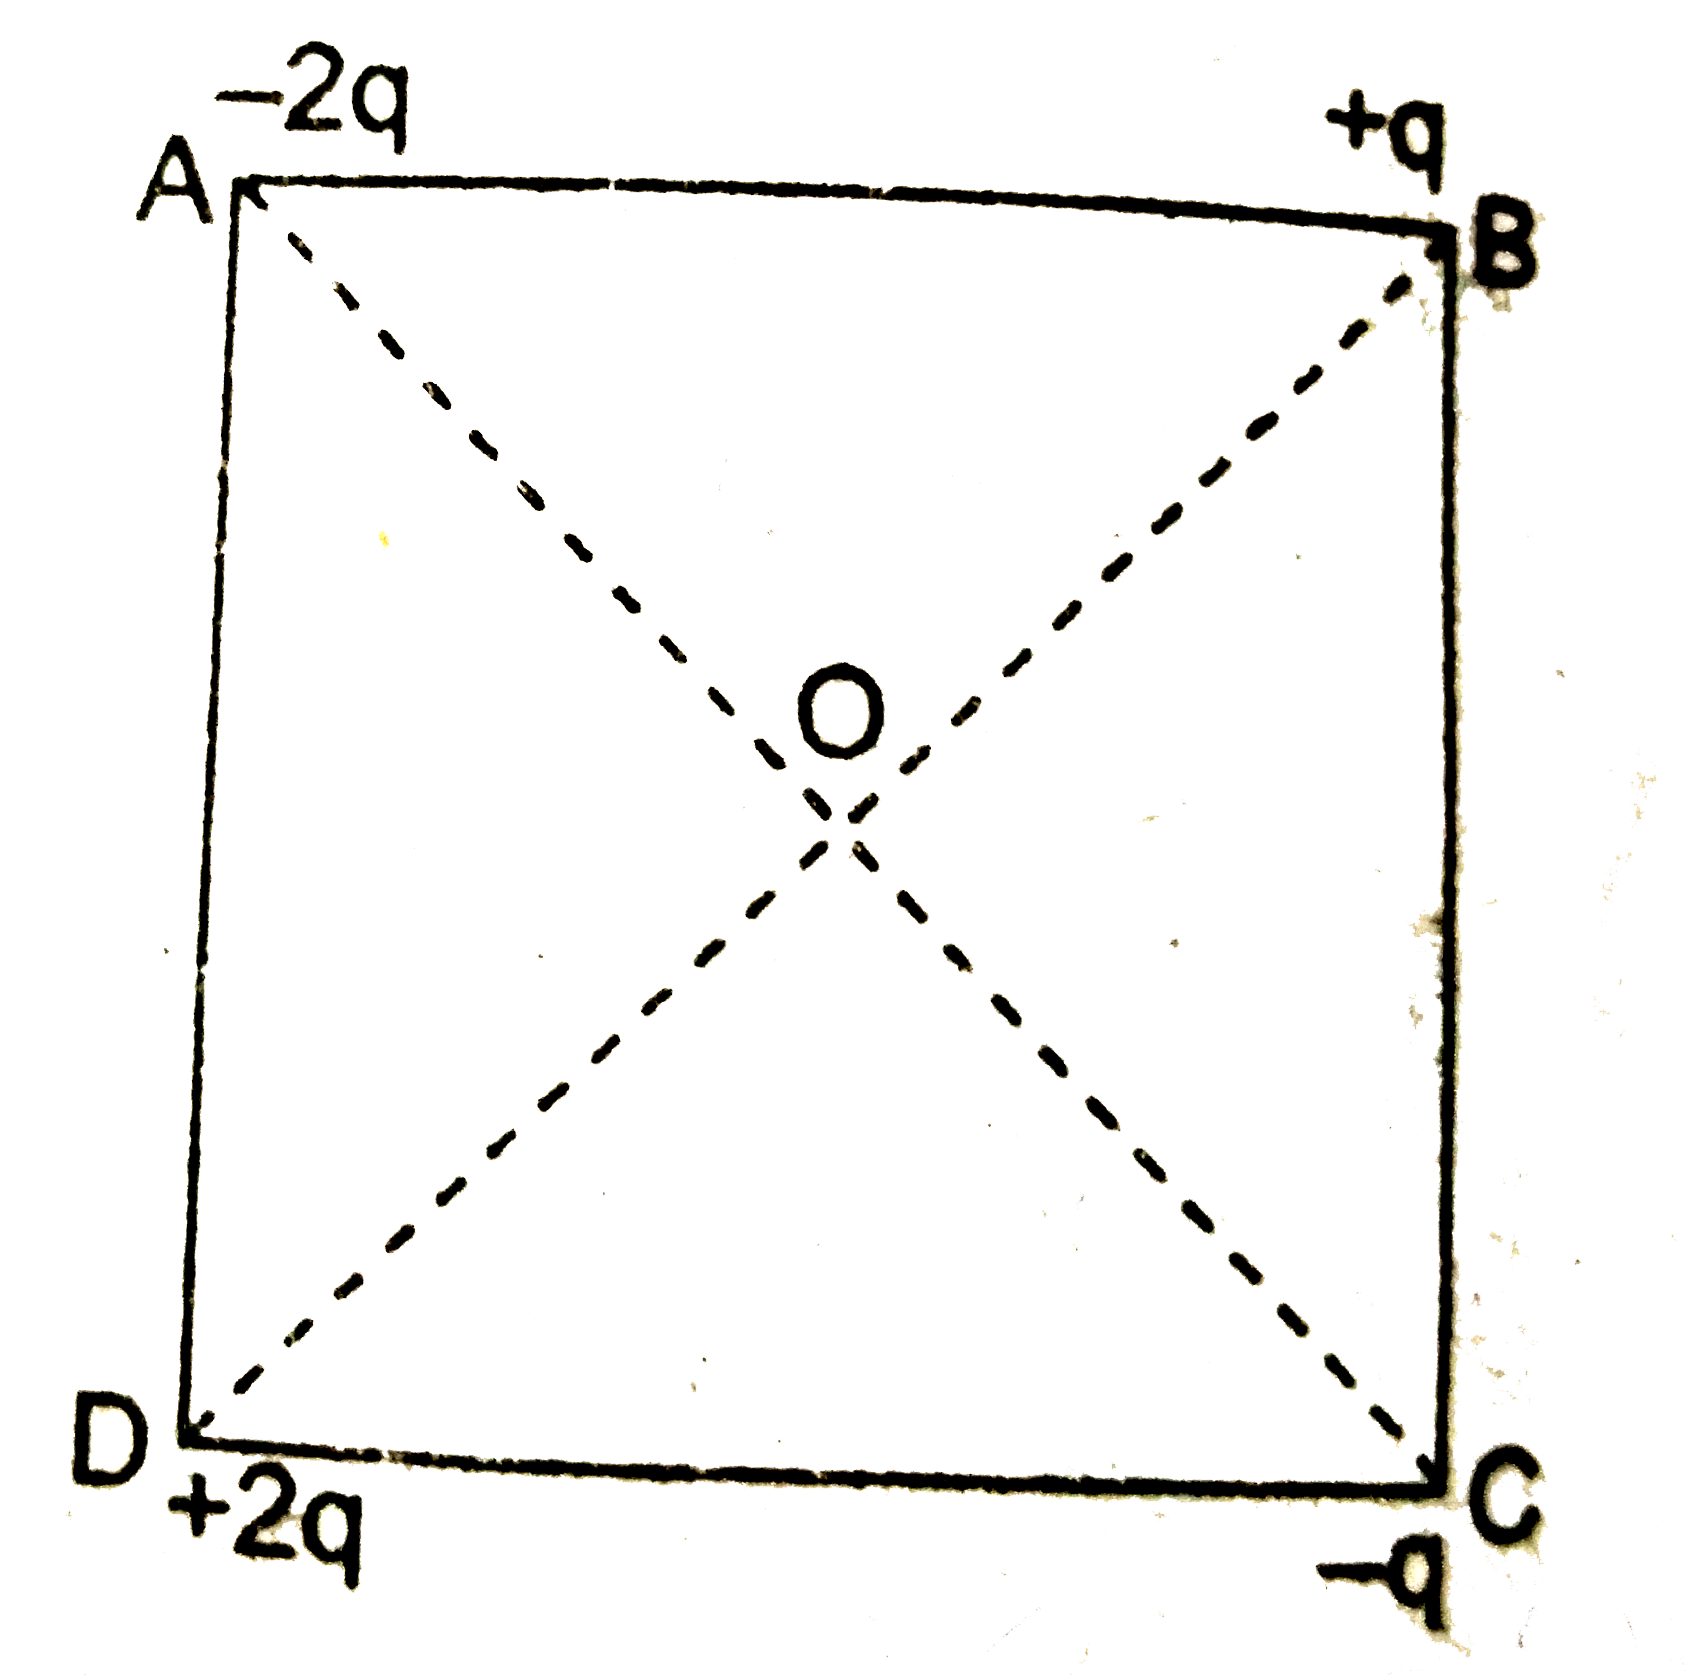 दिए गए इस चित्र में a सेमी भुजा वाले वर्ग के चारों कोनों पर चार बिन्दु आवेश रखे गए हैं । वर्ग के केन्द्र पर वैधुत क्षेत्र का परिणाम व दिशा ज्ञात कीजिए ।